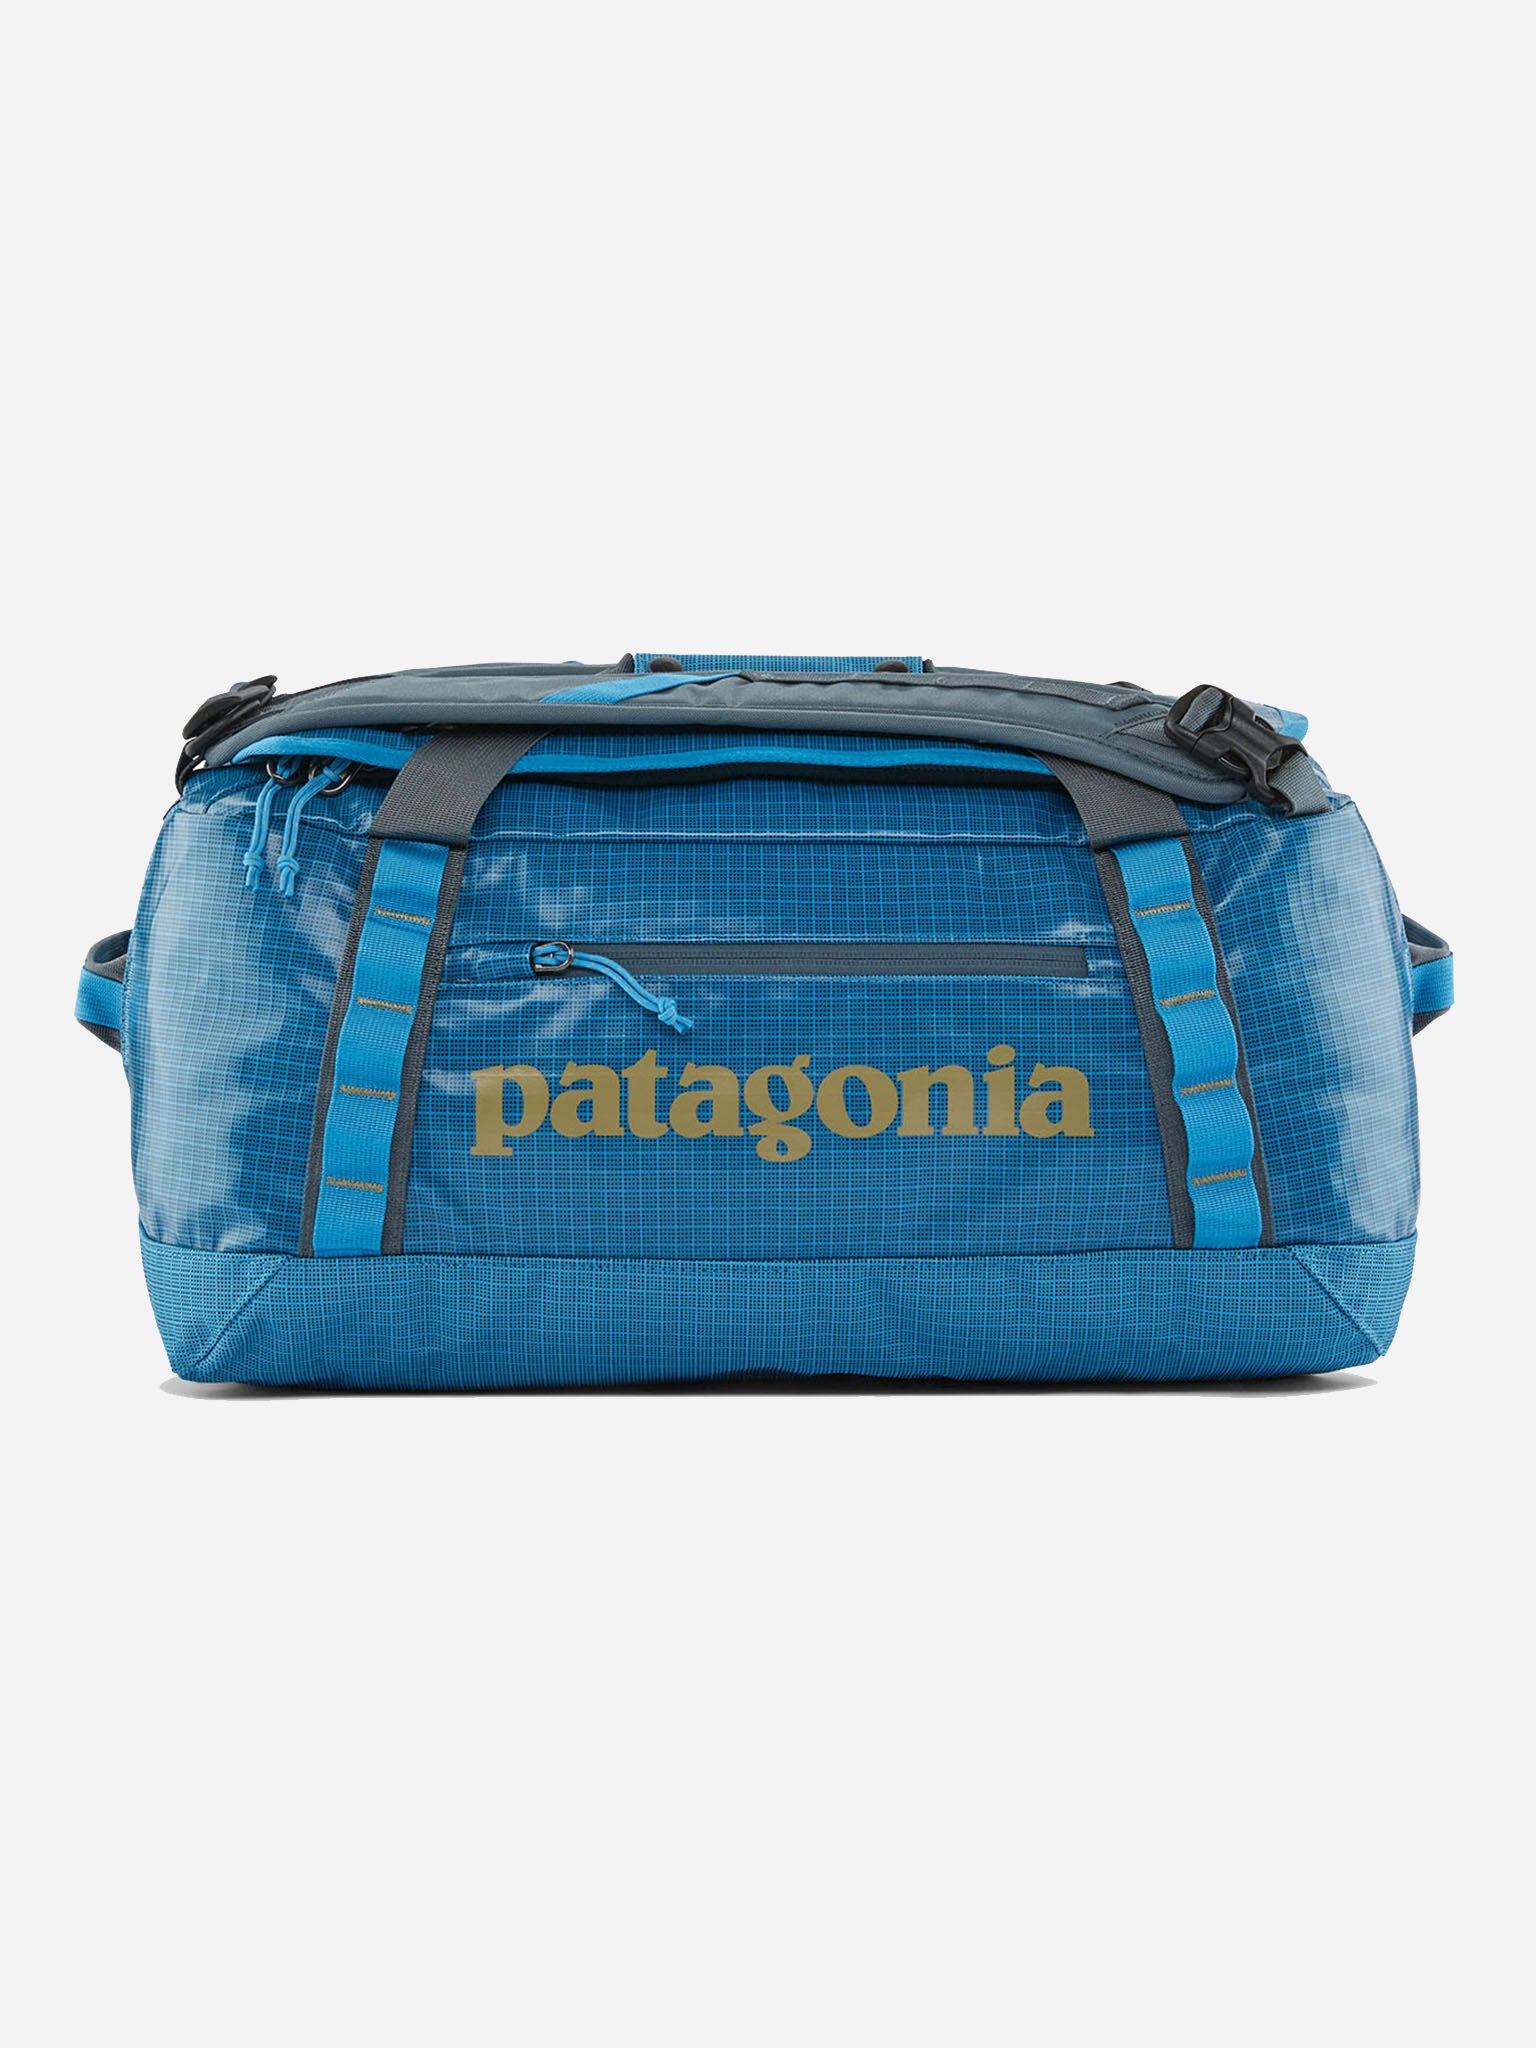 Patagonia Black Duffle Bag 40L - Saint Bernard